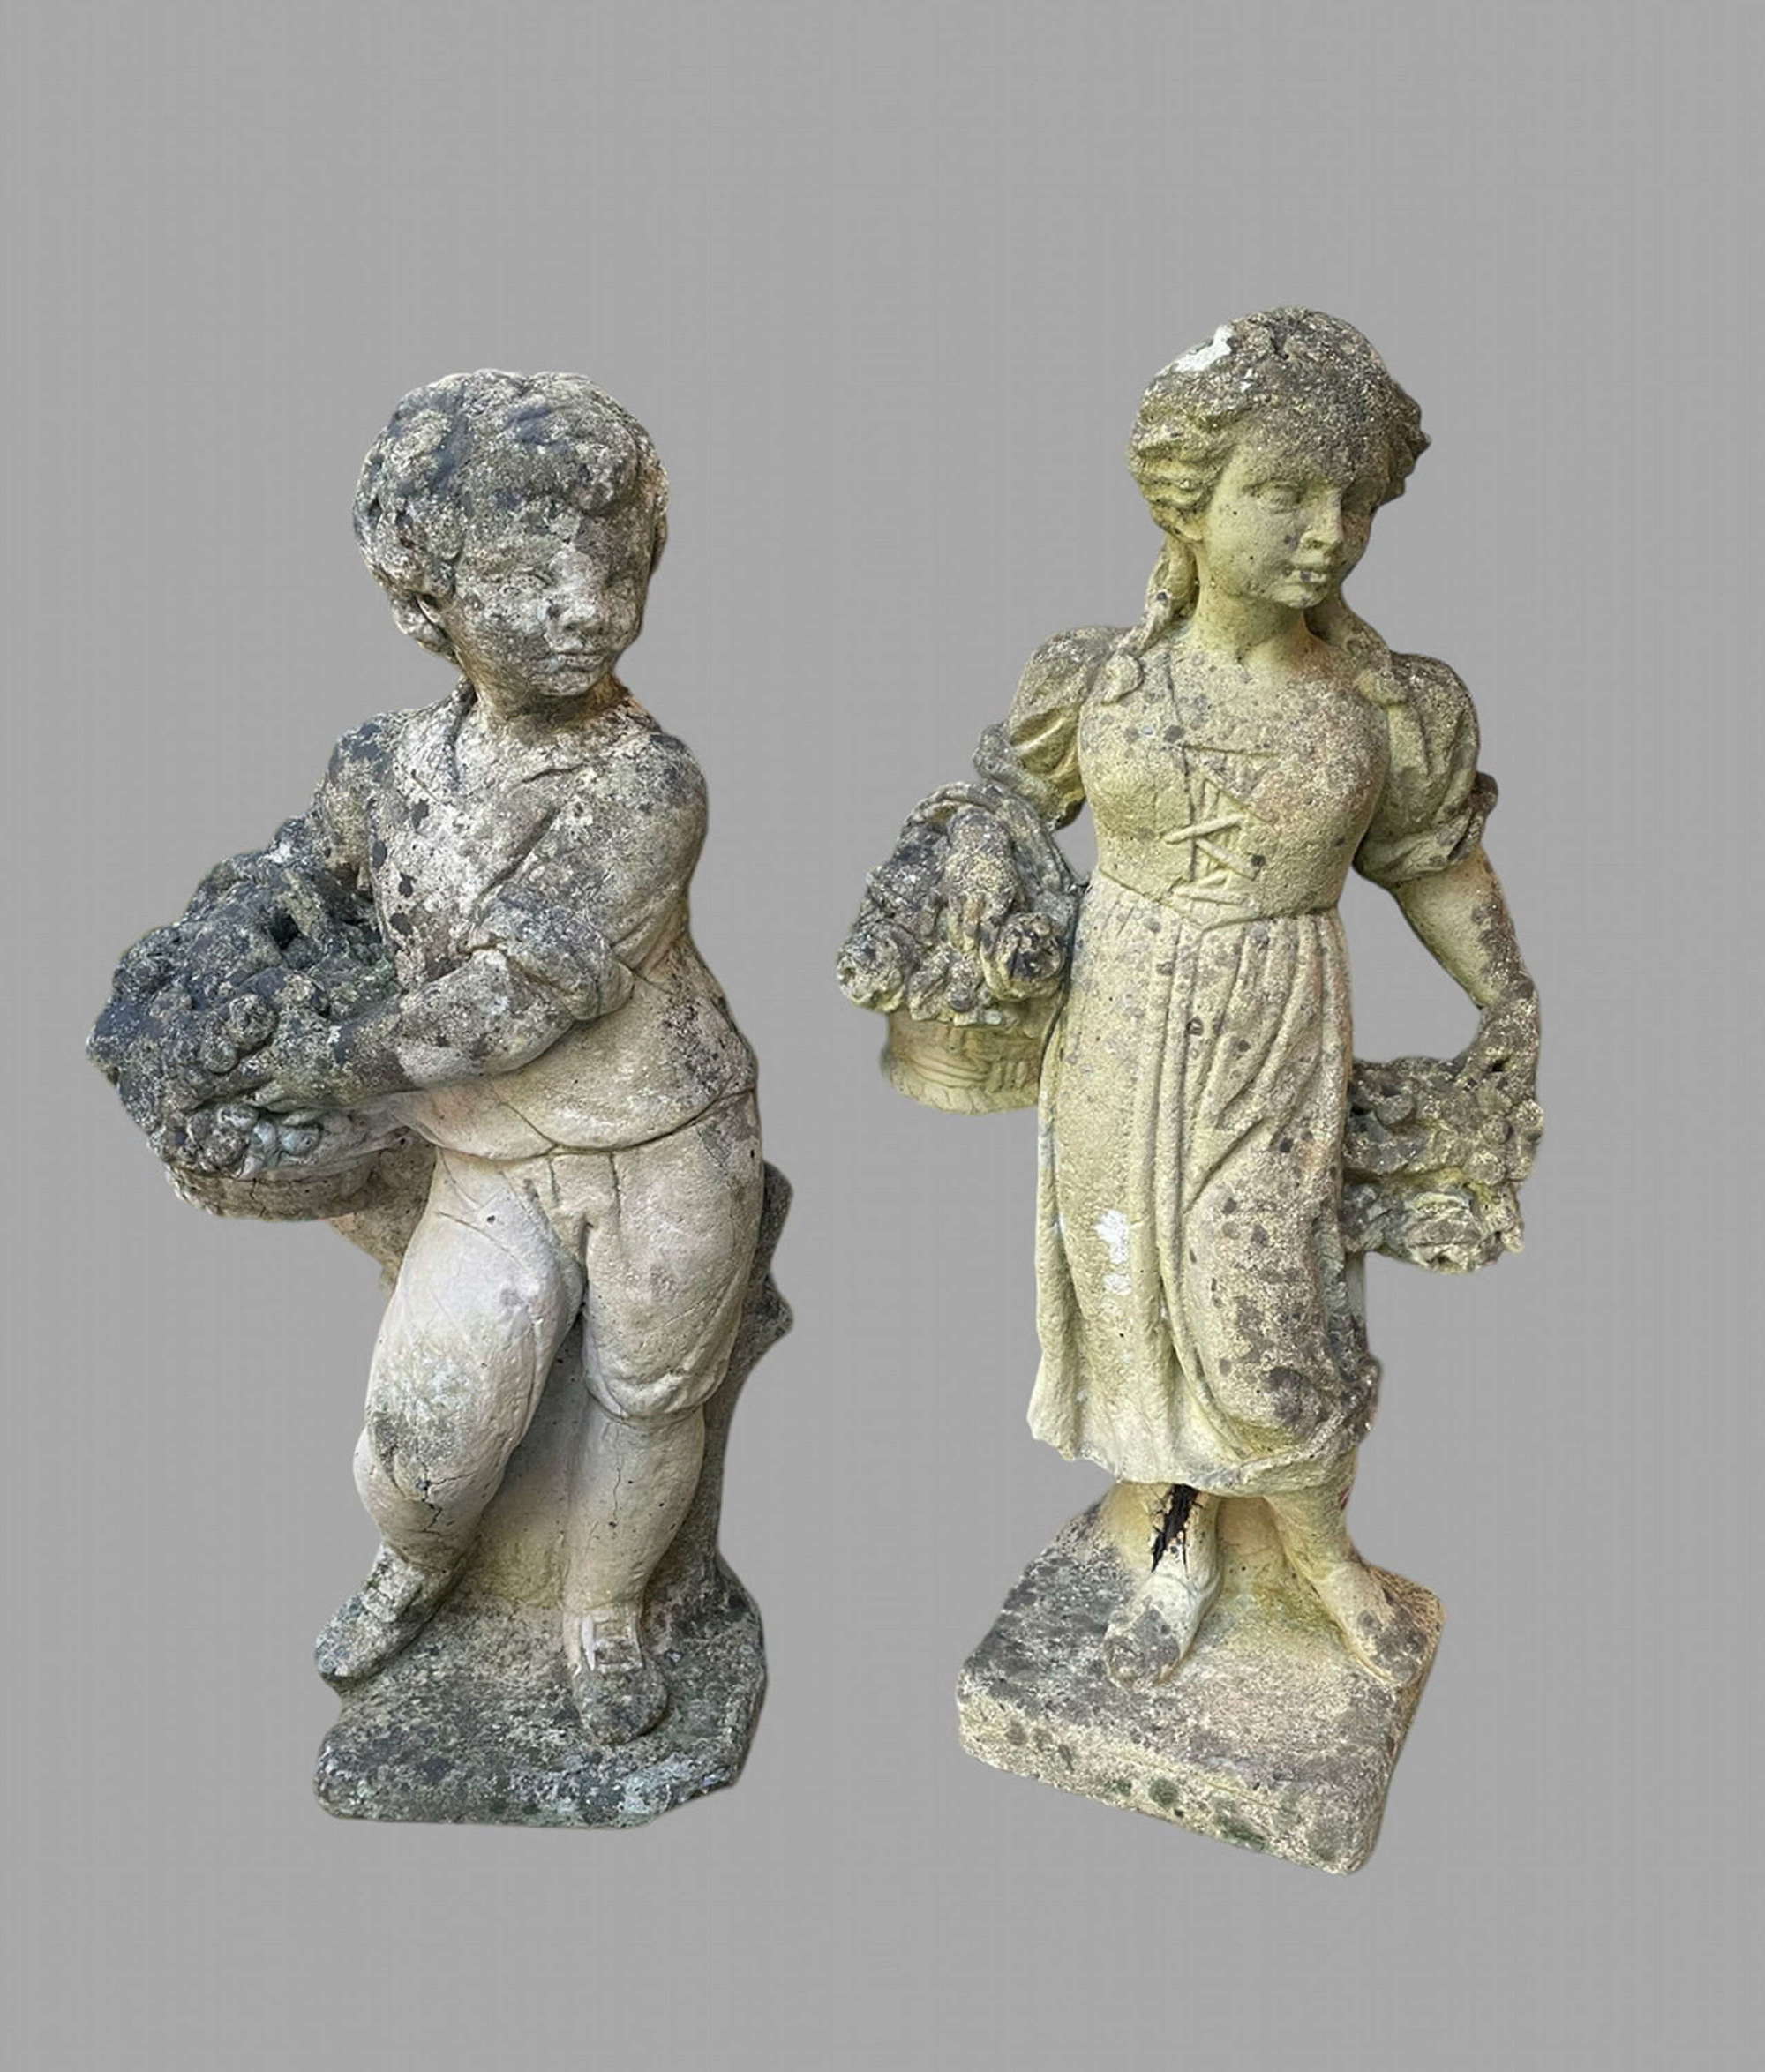 A Stone Boy and Girl Garden Figures